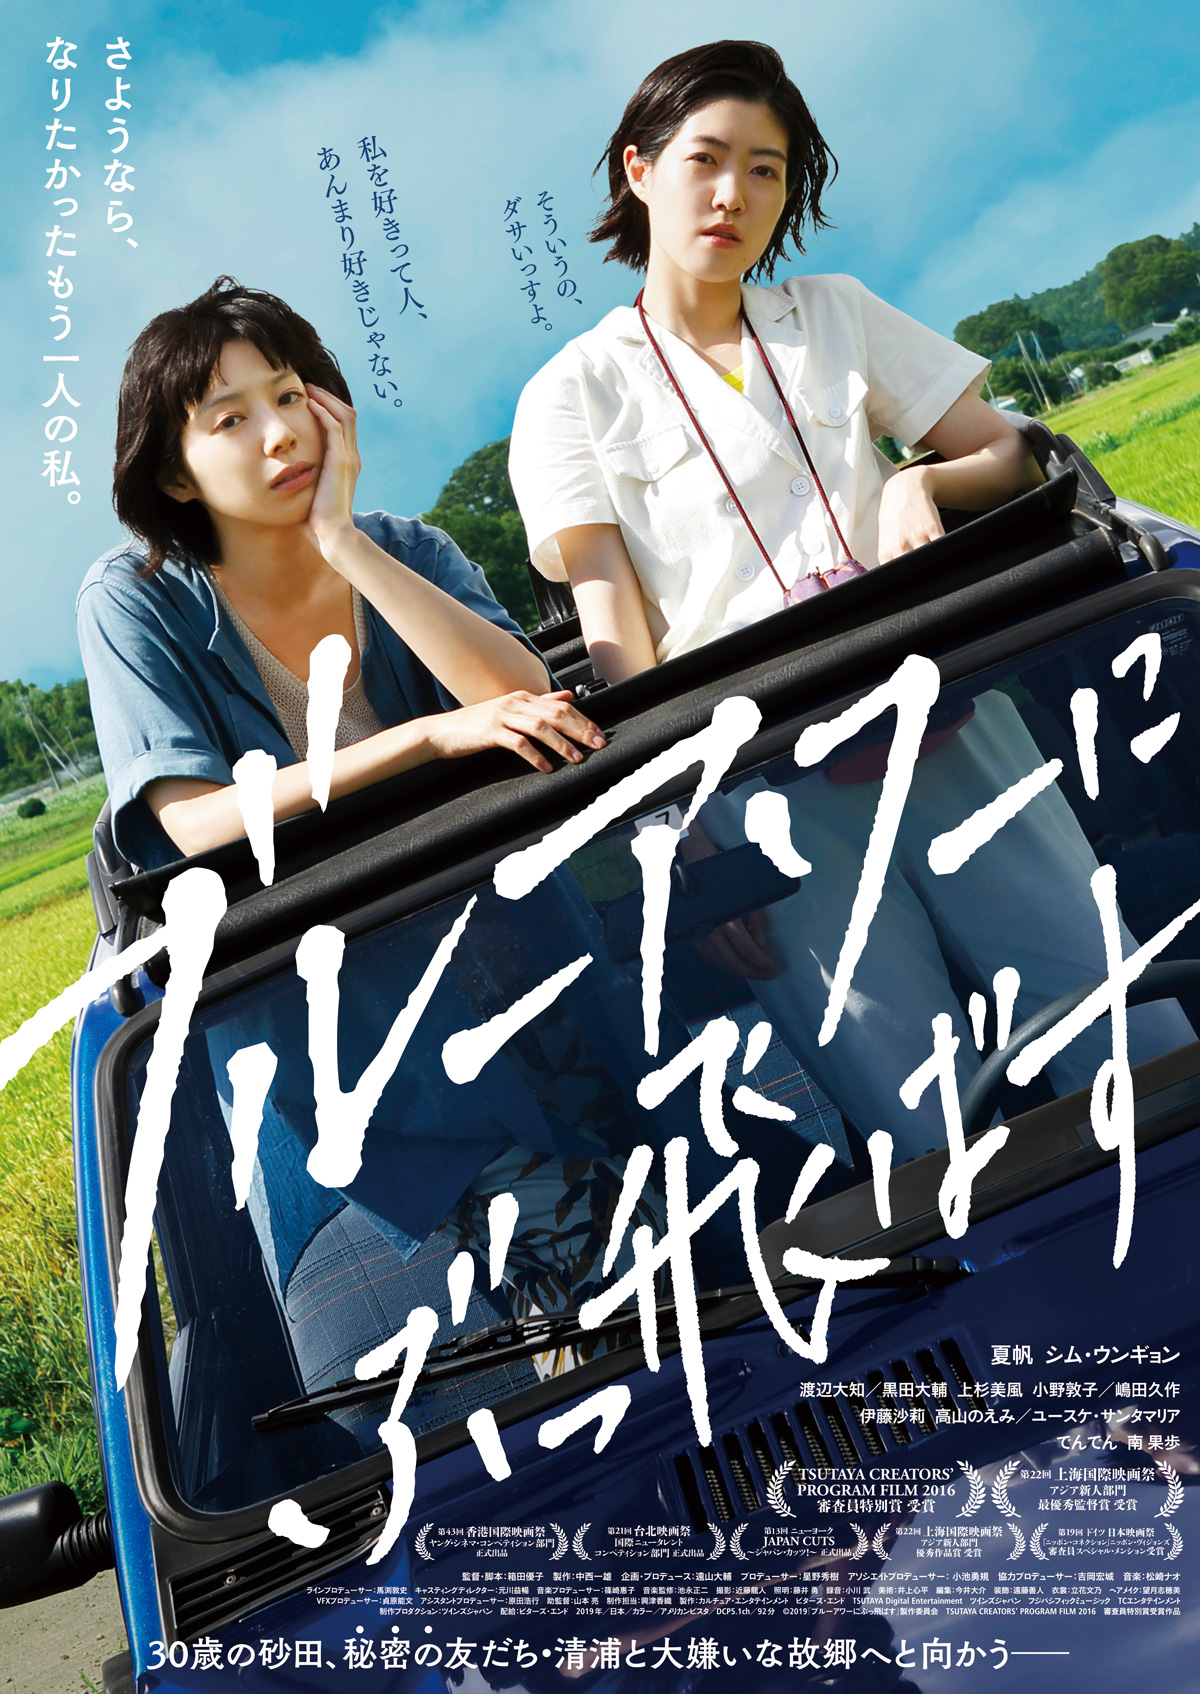 年上半期に韓国で公開した日本映画 としてno 1ヒット Tsutaya Creators Program映像化作品 ブルーアワーにぶっ飛ばす カルチュア コンビニエンス クラブ株式会社のプレスリリース